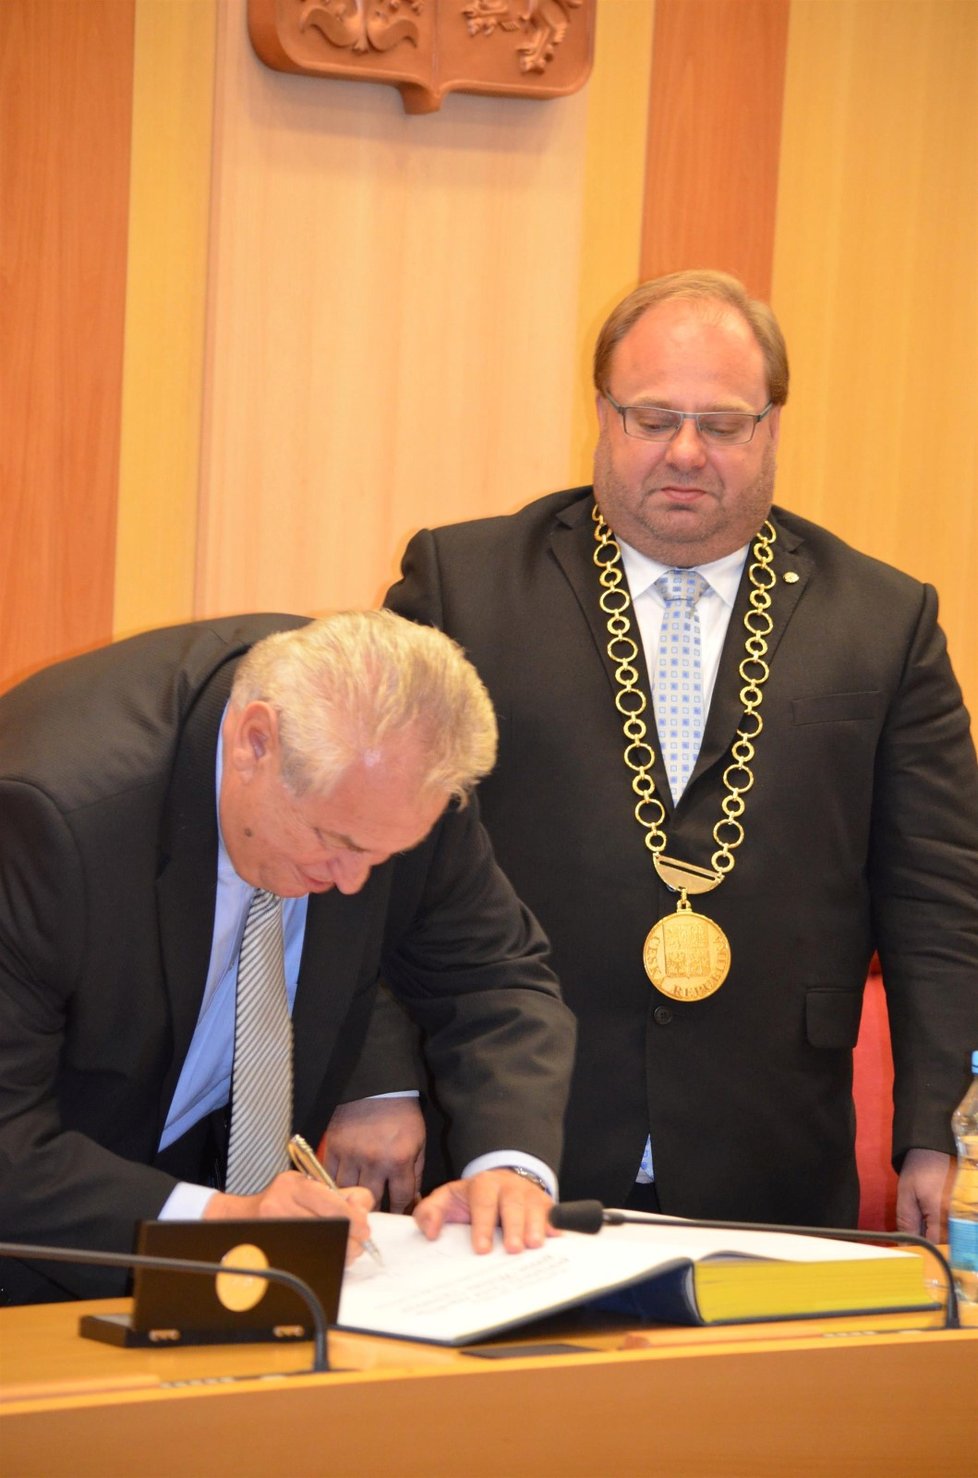 „Tužku vracím,“ utahuje si prezident Miloš Zeman v krajích ze svého předchůdce Václava Klause, který si vzal v roce 2011 v Chile protokolární pero